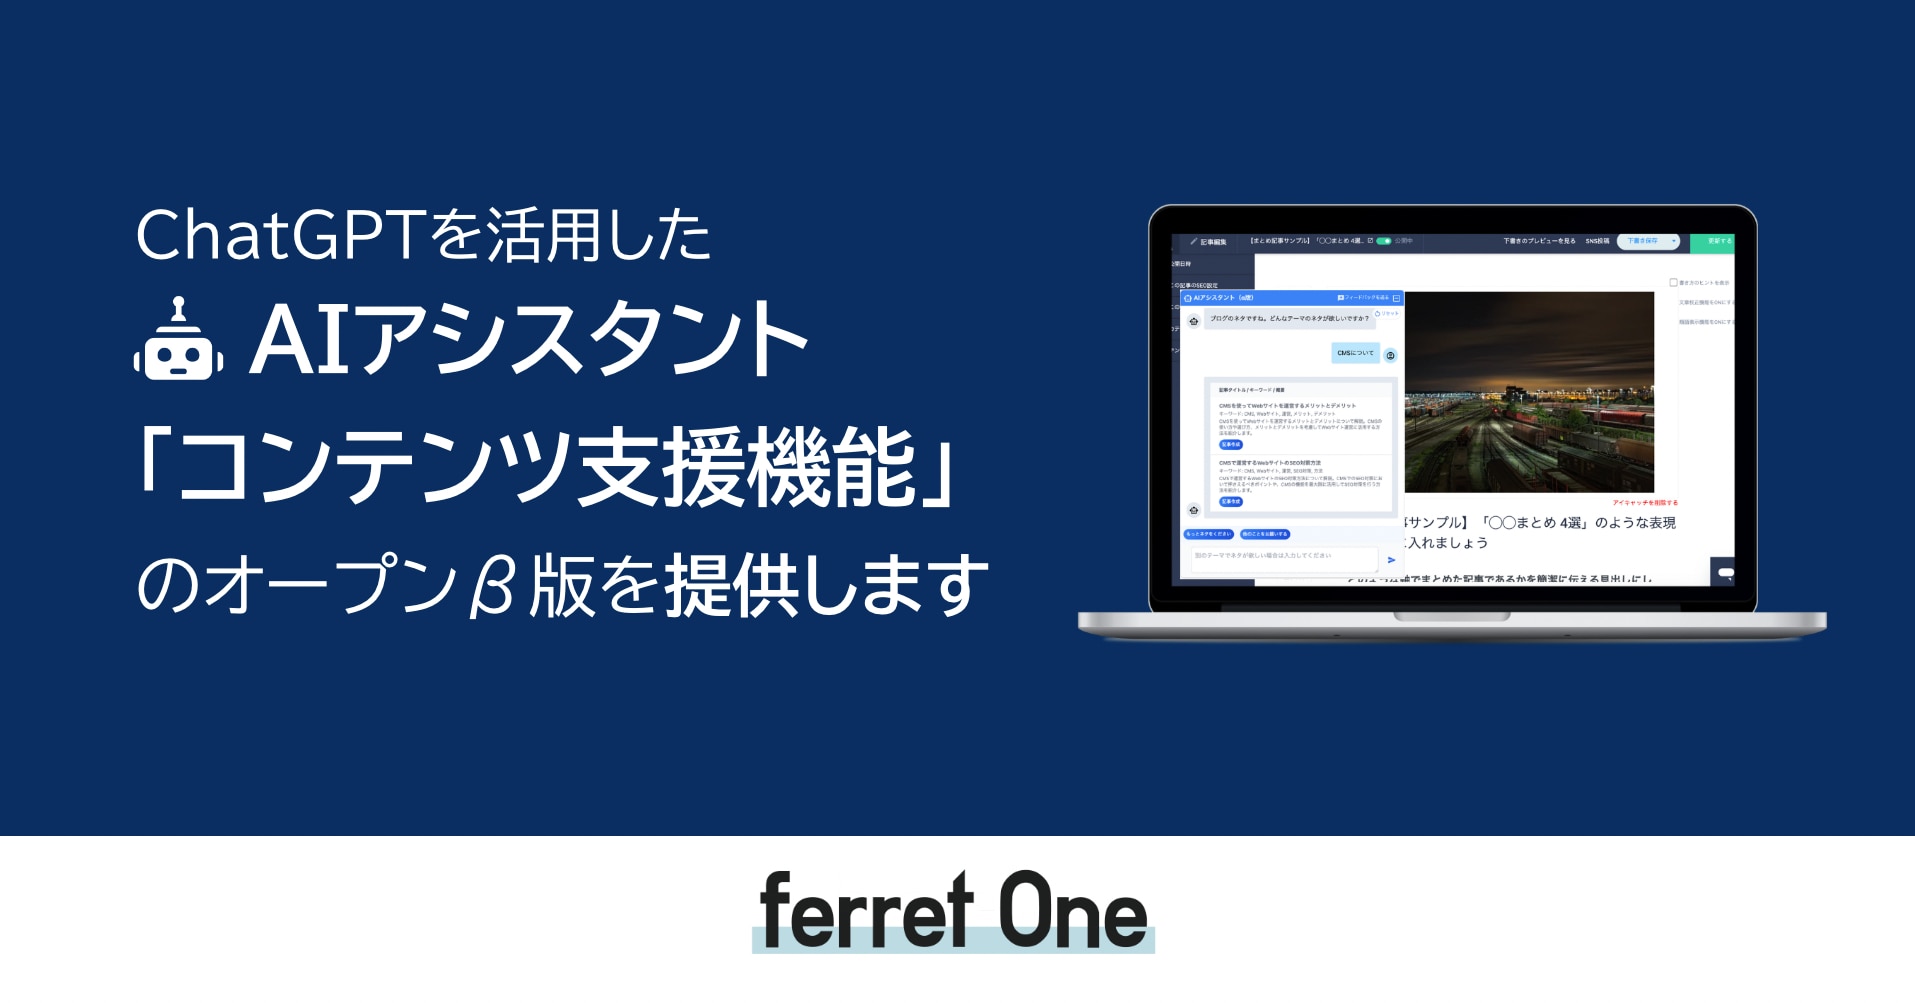 ferret One』、ChatGPTを活用した「コンテンツ支援機能」のオープンβ版